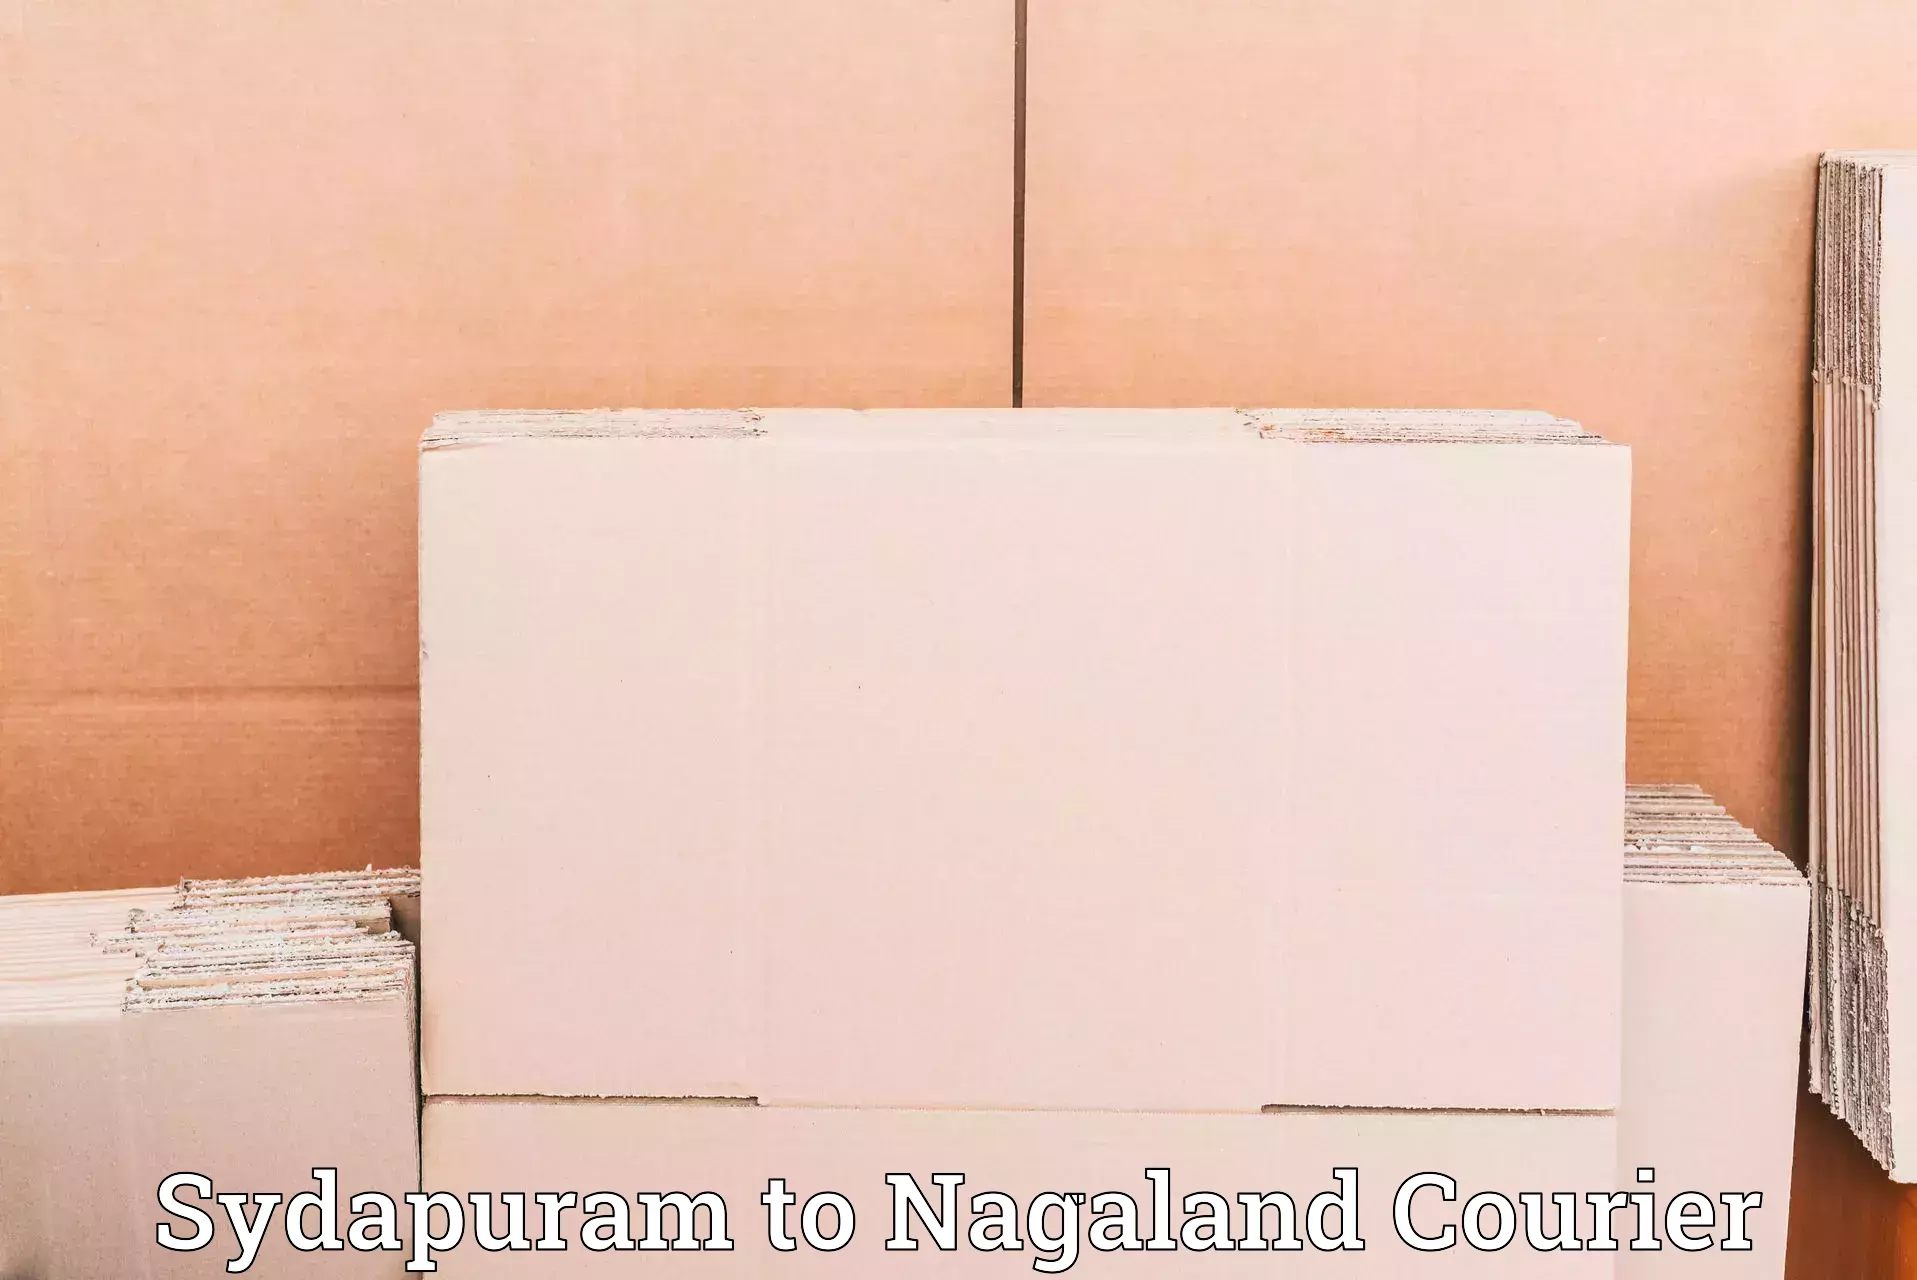 Premium courier solutions Sydapuram to Nagaland